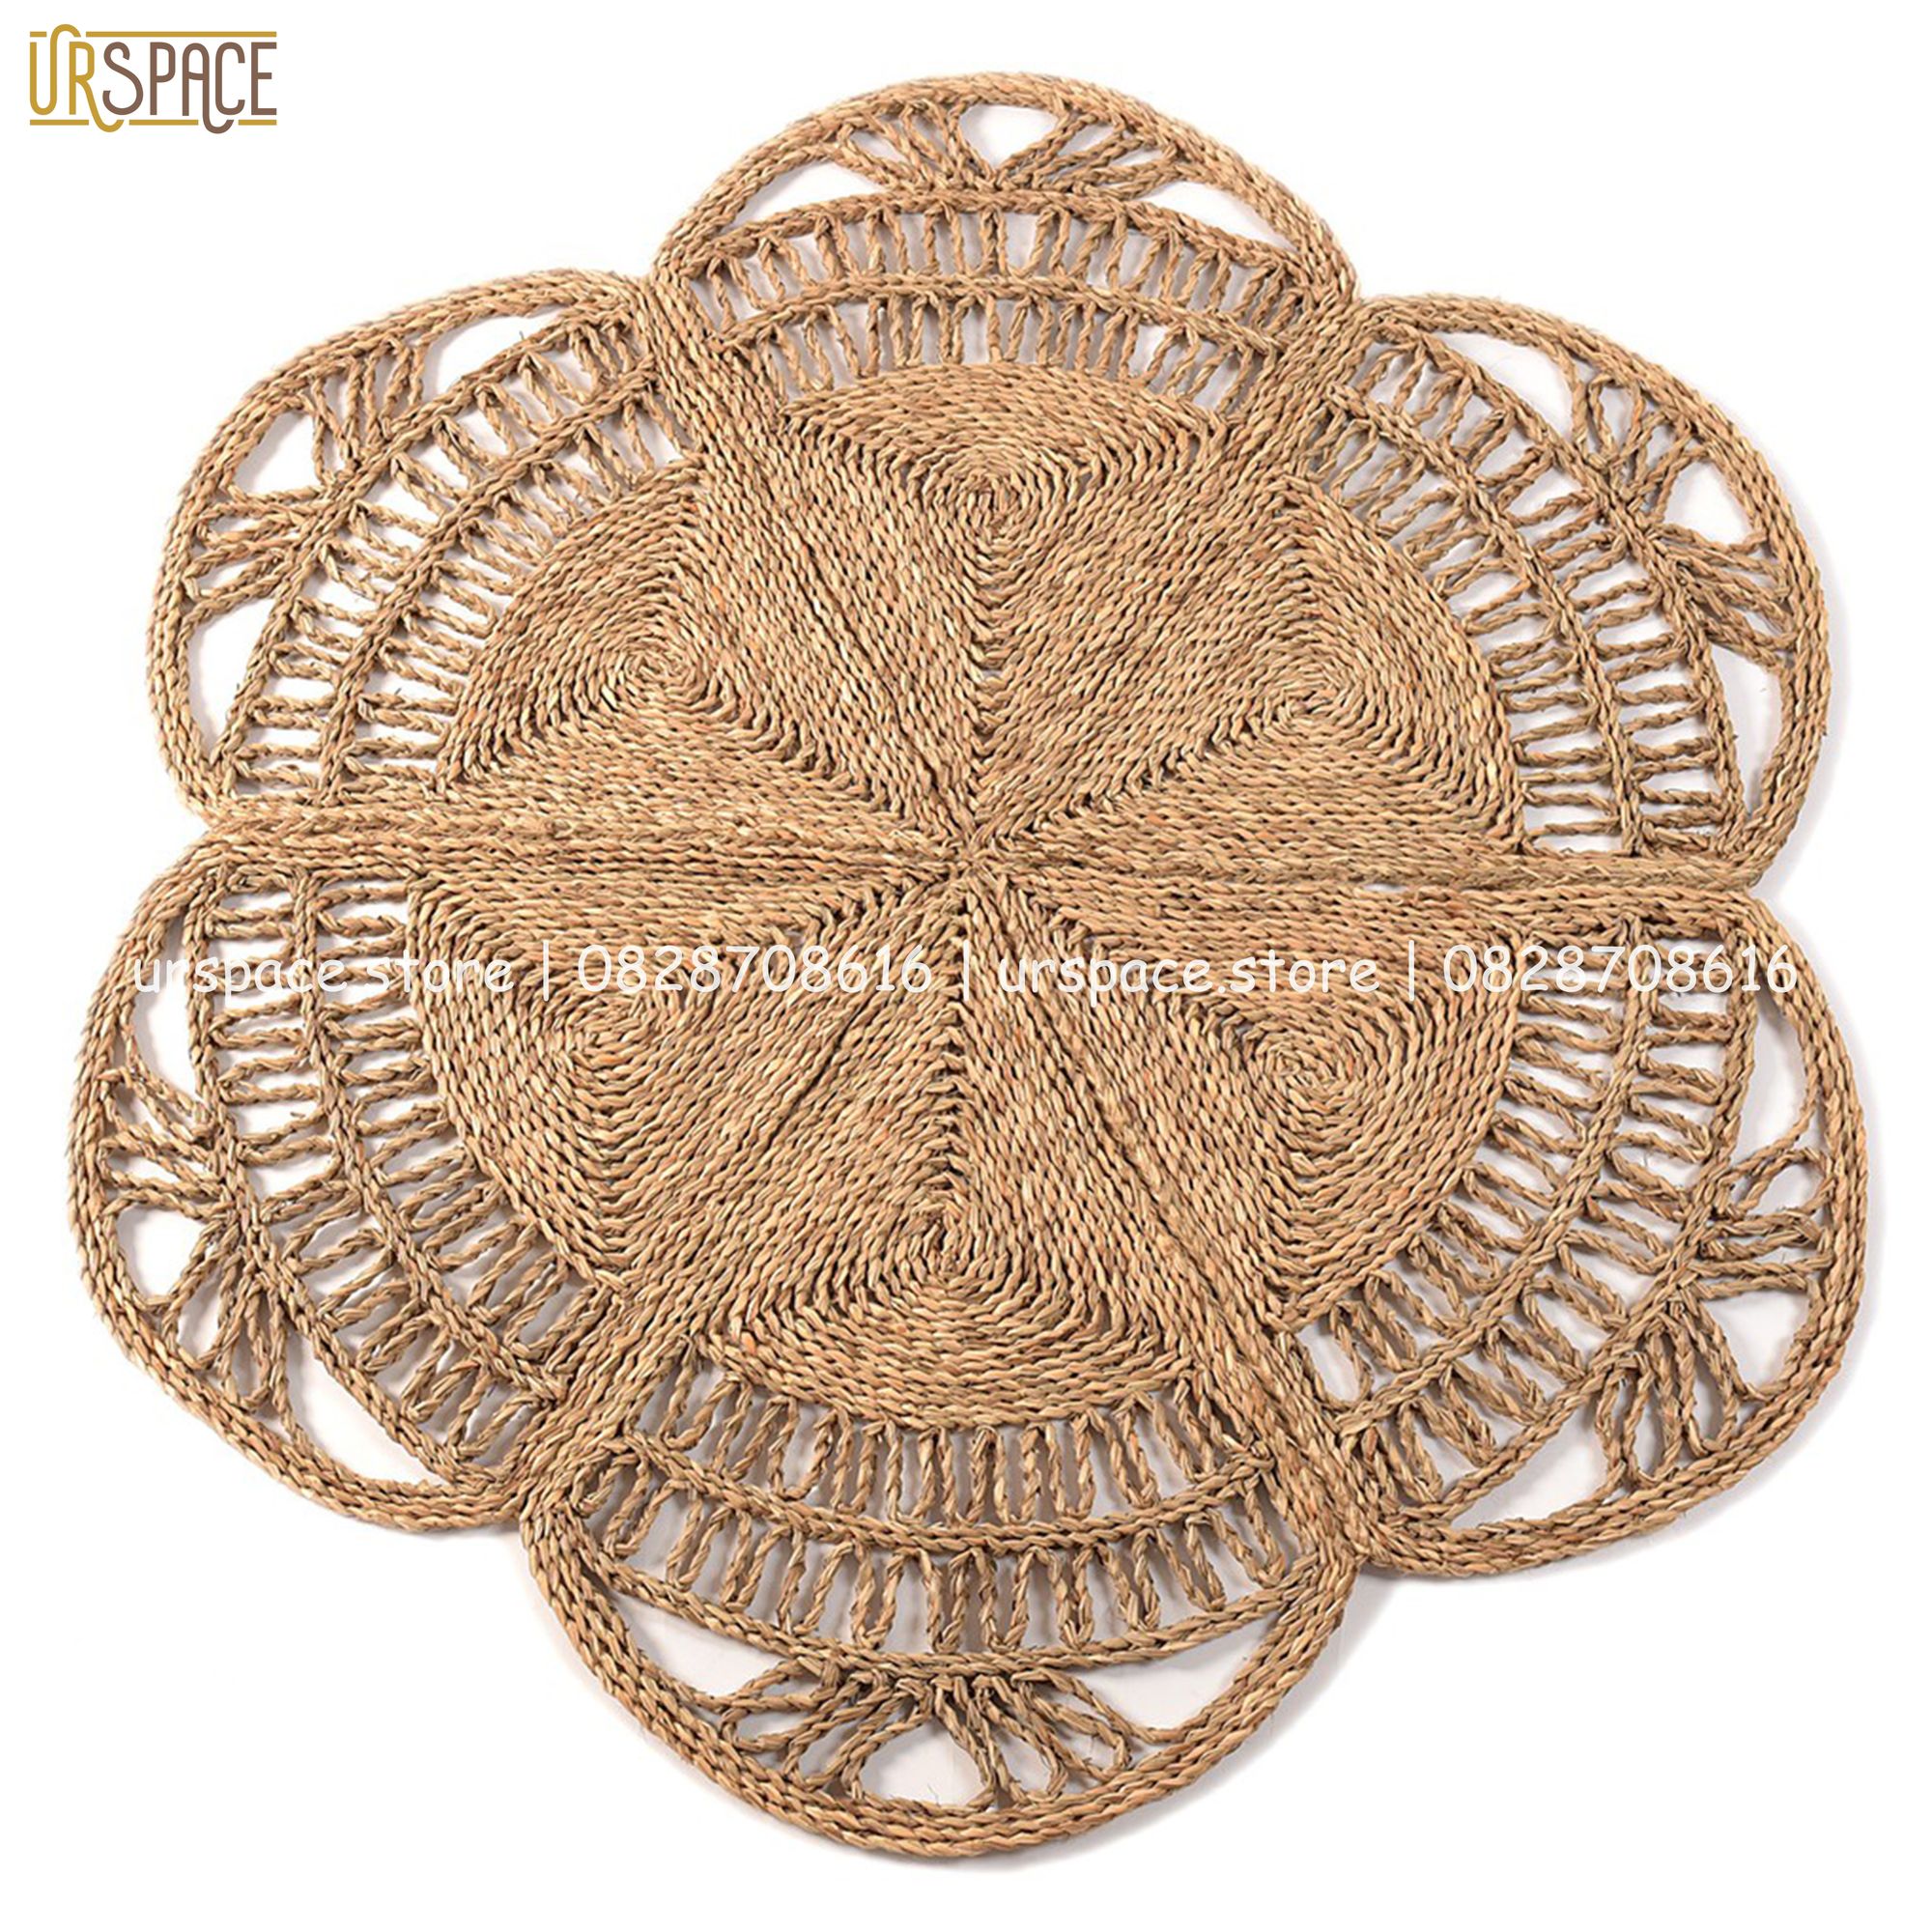 Thảm trải sàn bằng cói hình tròn đường kính 150 cm/ Hand-woven seagrass round rugs for living room